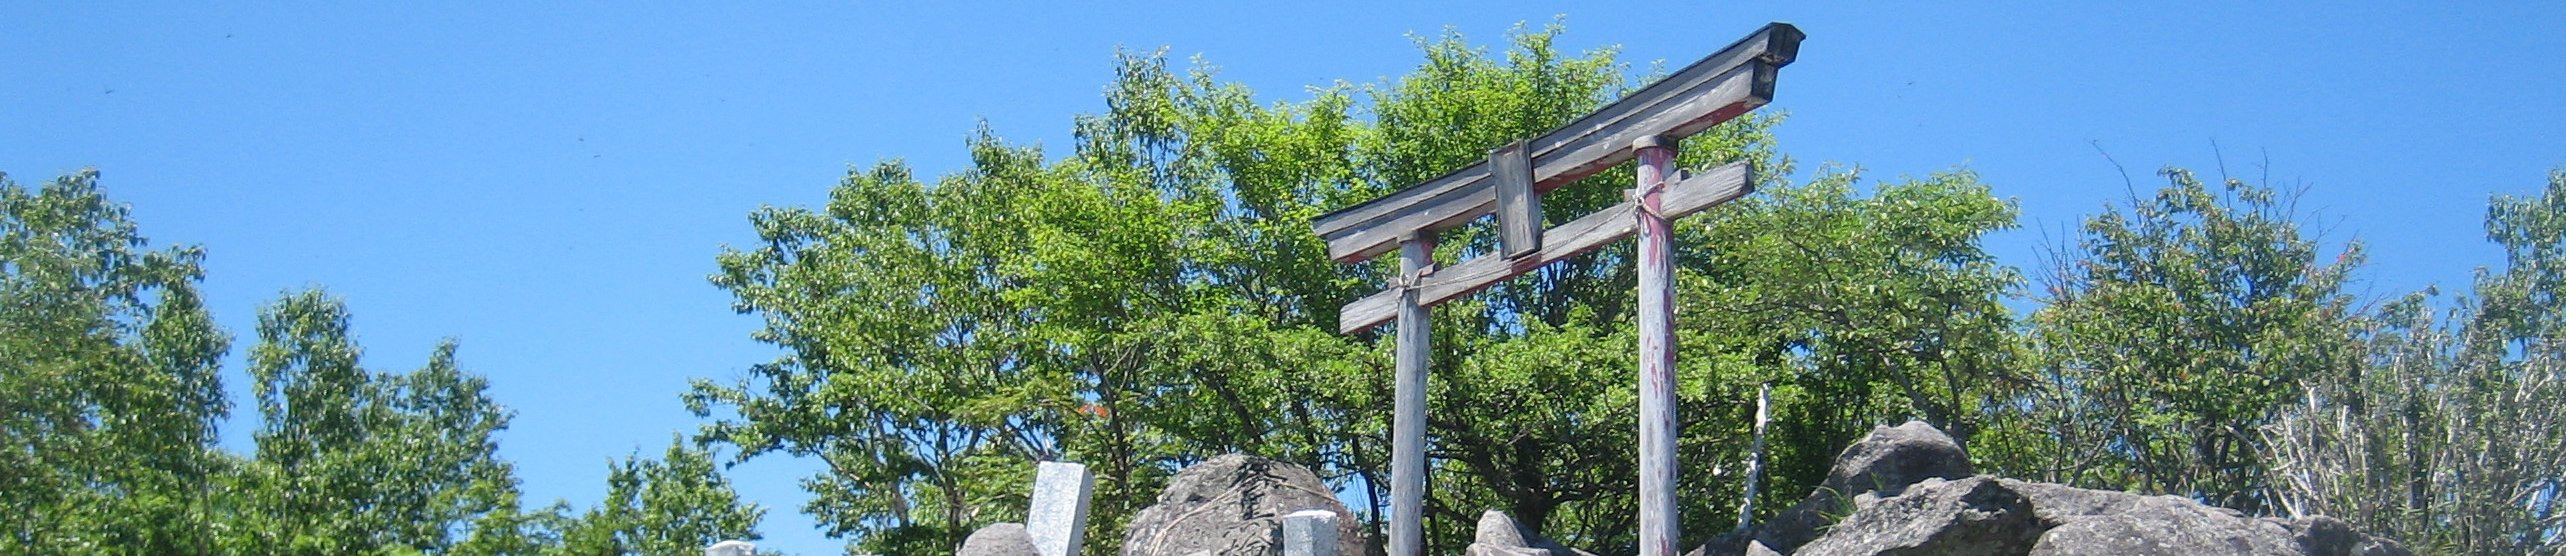 赤城山 banner image